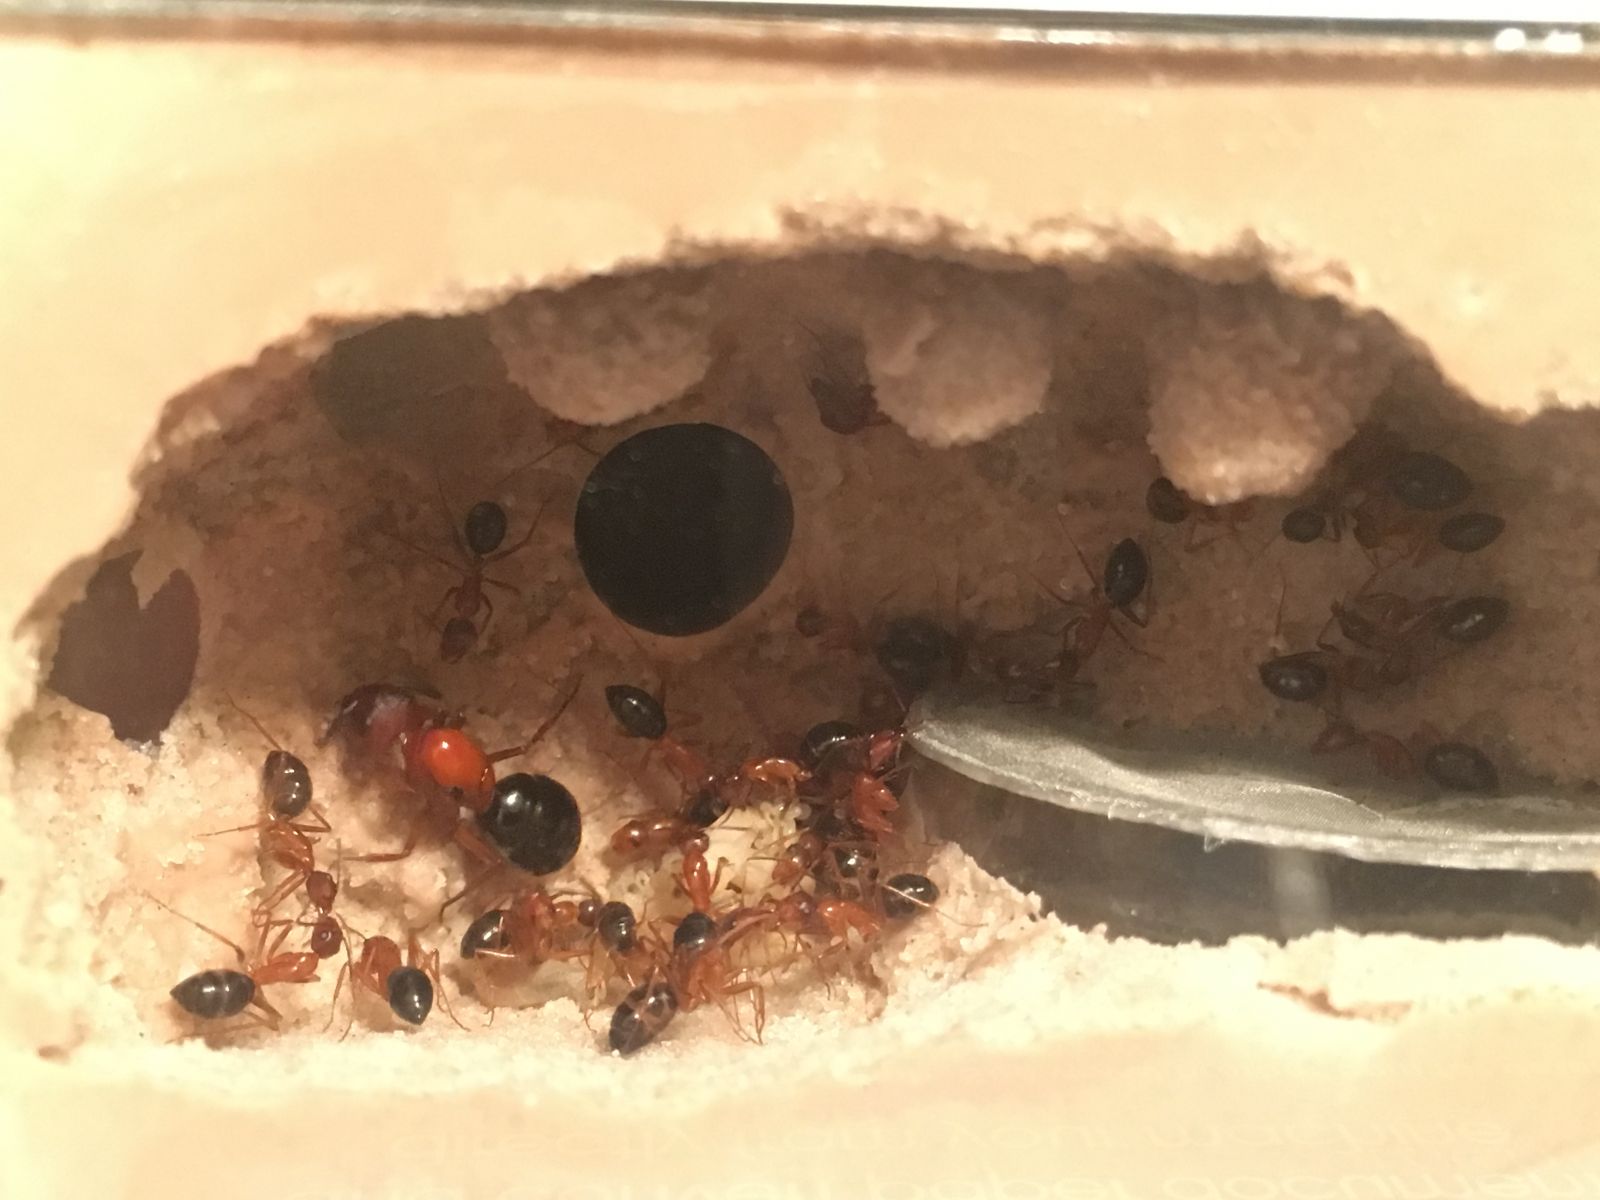 Camponotus floridanus in a THA Minihearth